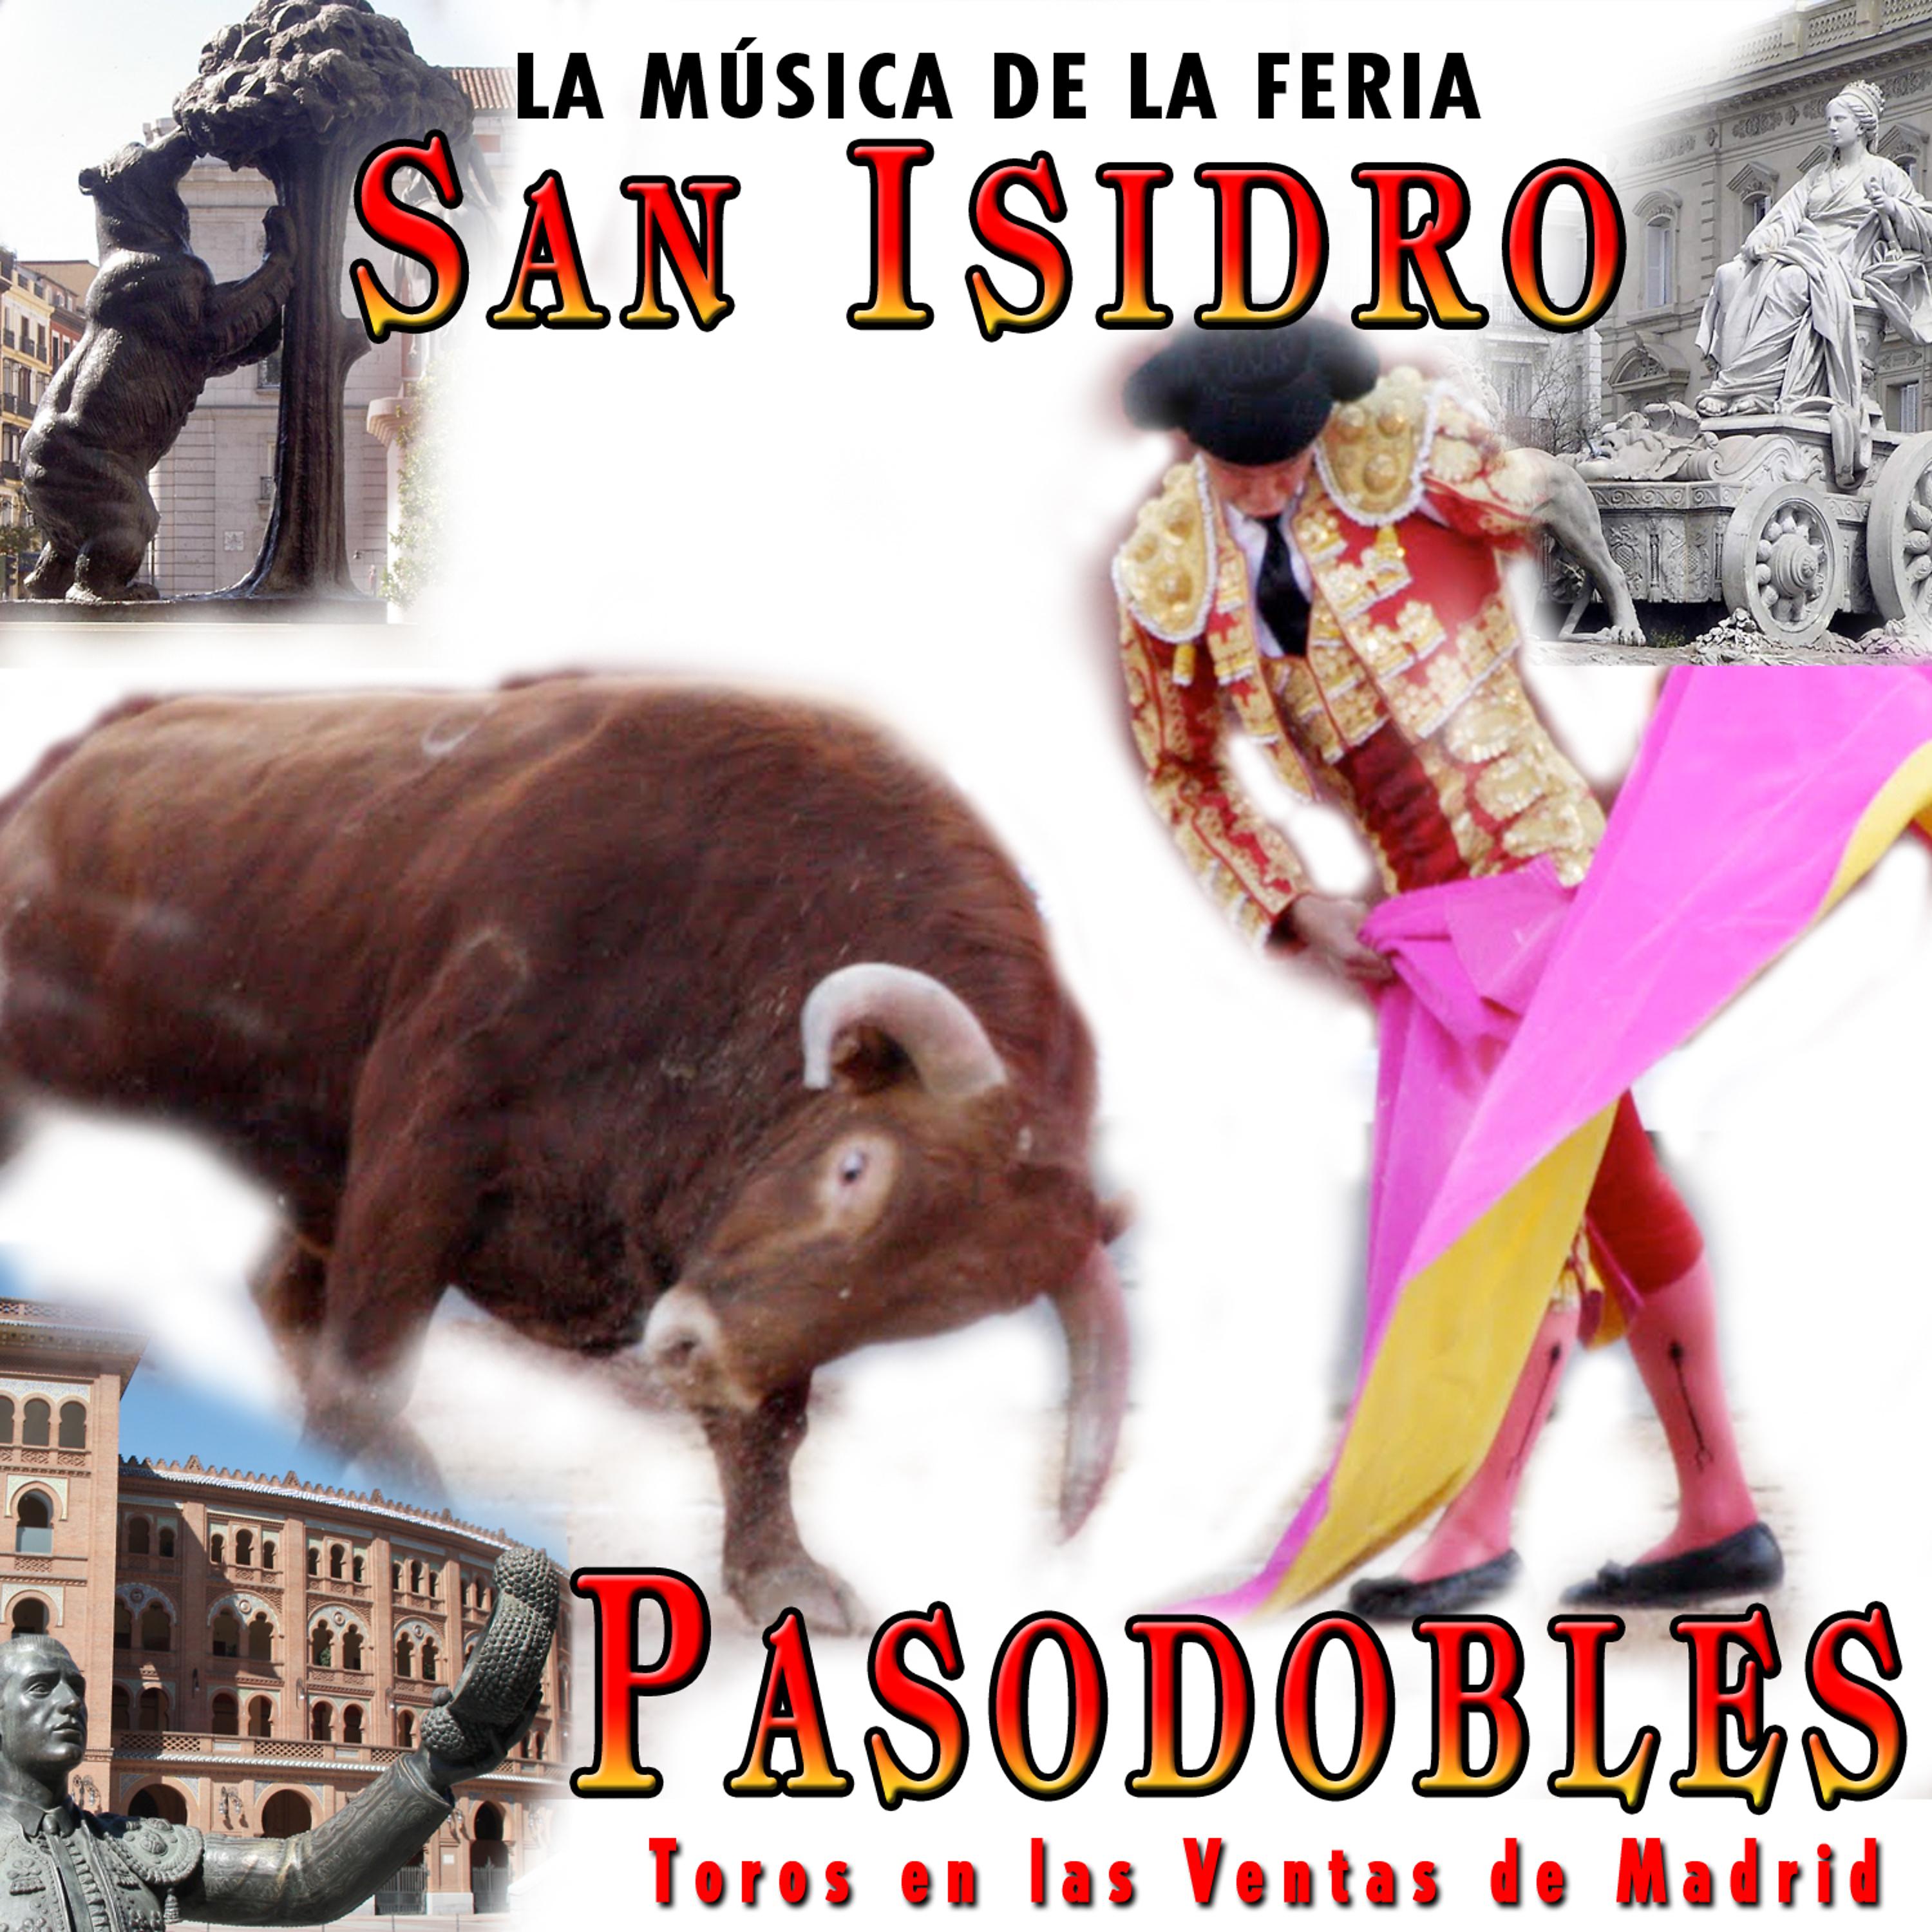 Постер альбома San Isidro. La Música de la Feria. Pasodobles, Toros en las Ventas de Madrid